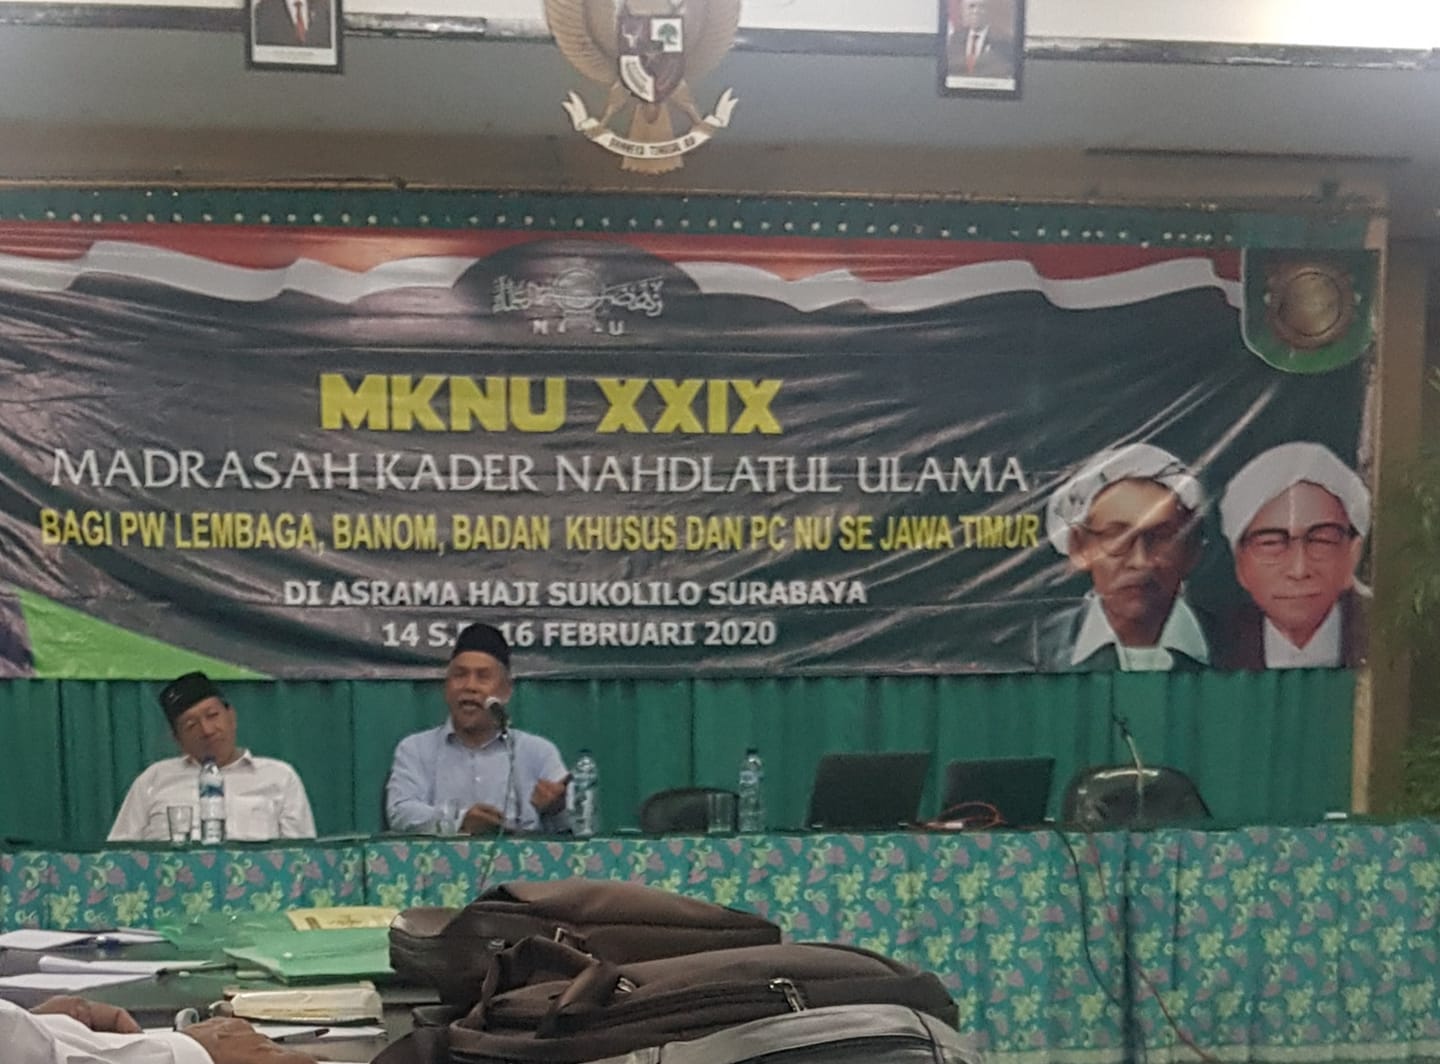 Ketua PWNU Jatim, KH Marzuki Mustamar, Pembukaan Madrasah Kader XXIX Nahdlatul Ulama Jawa Timur, di Asrama Haji Surabaya, (Foto: Istimewa) 